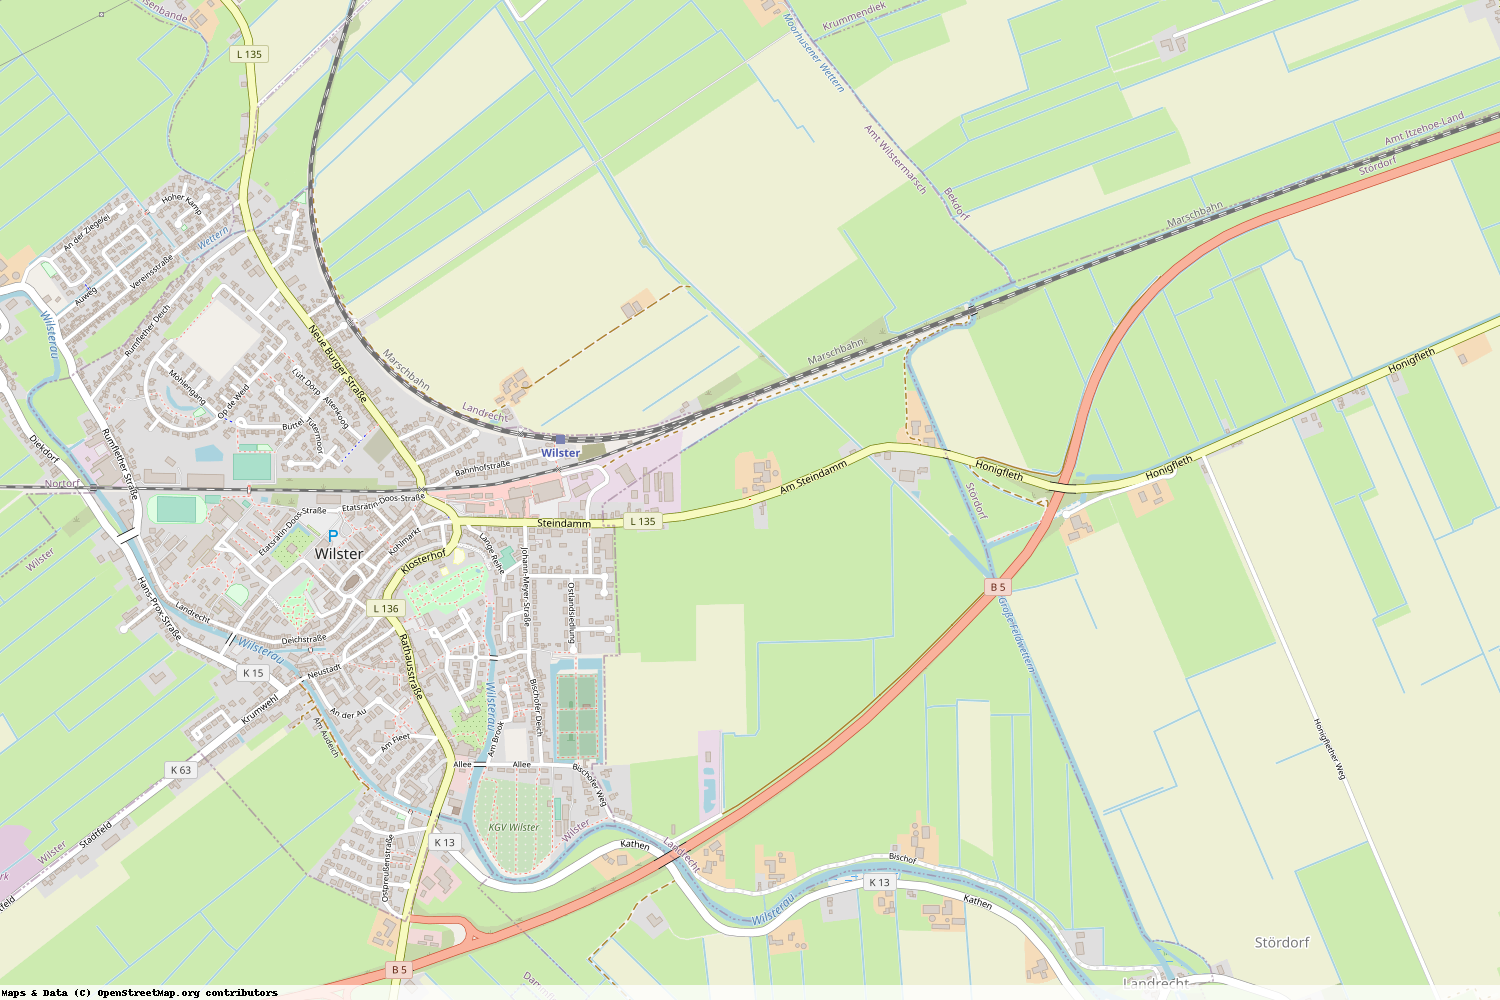 Ist gerade Stromausfall in Schleswig-Holstein - Steinburg - Landrecht?